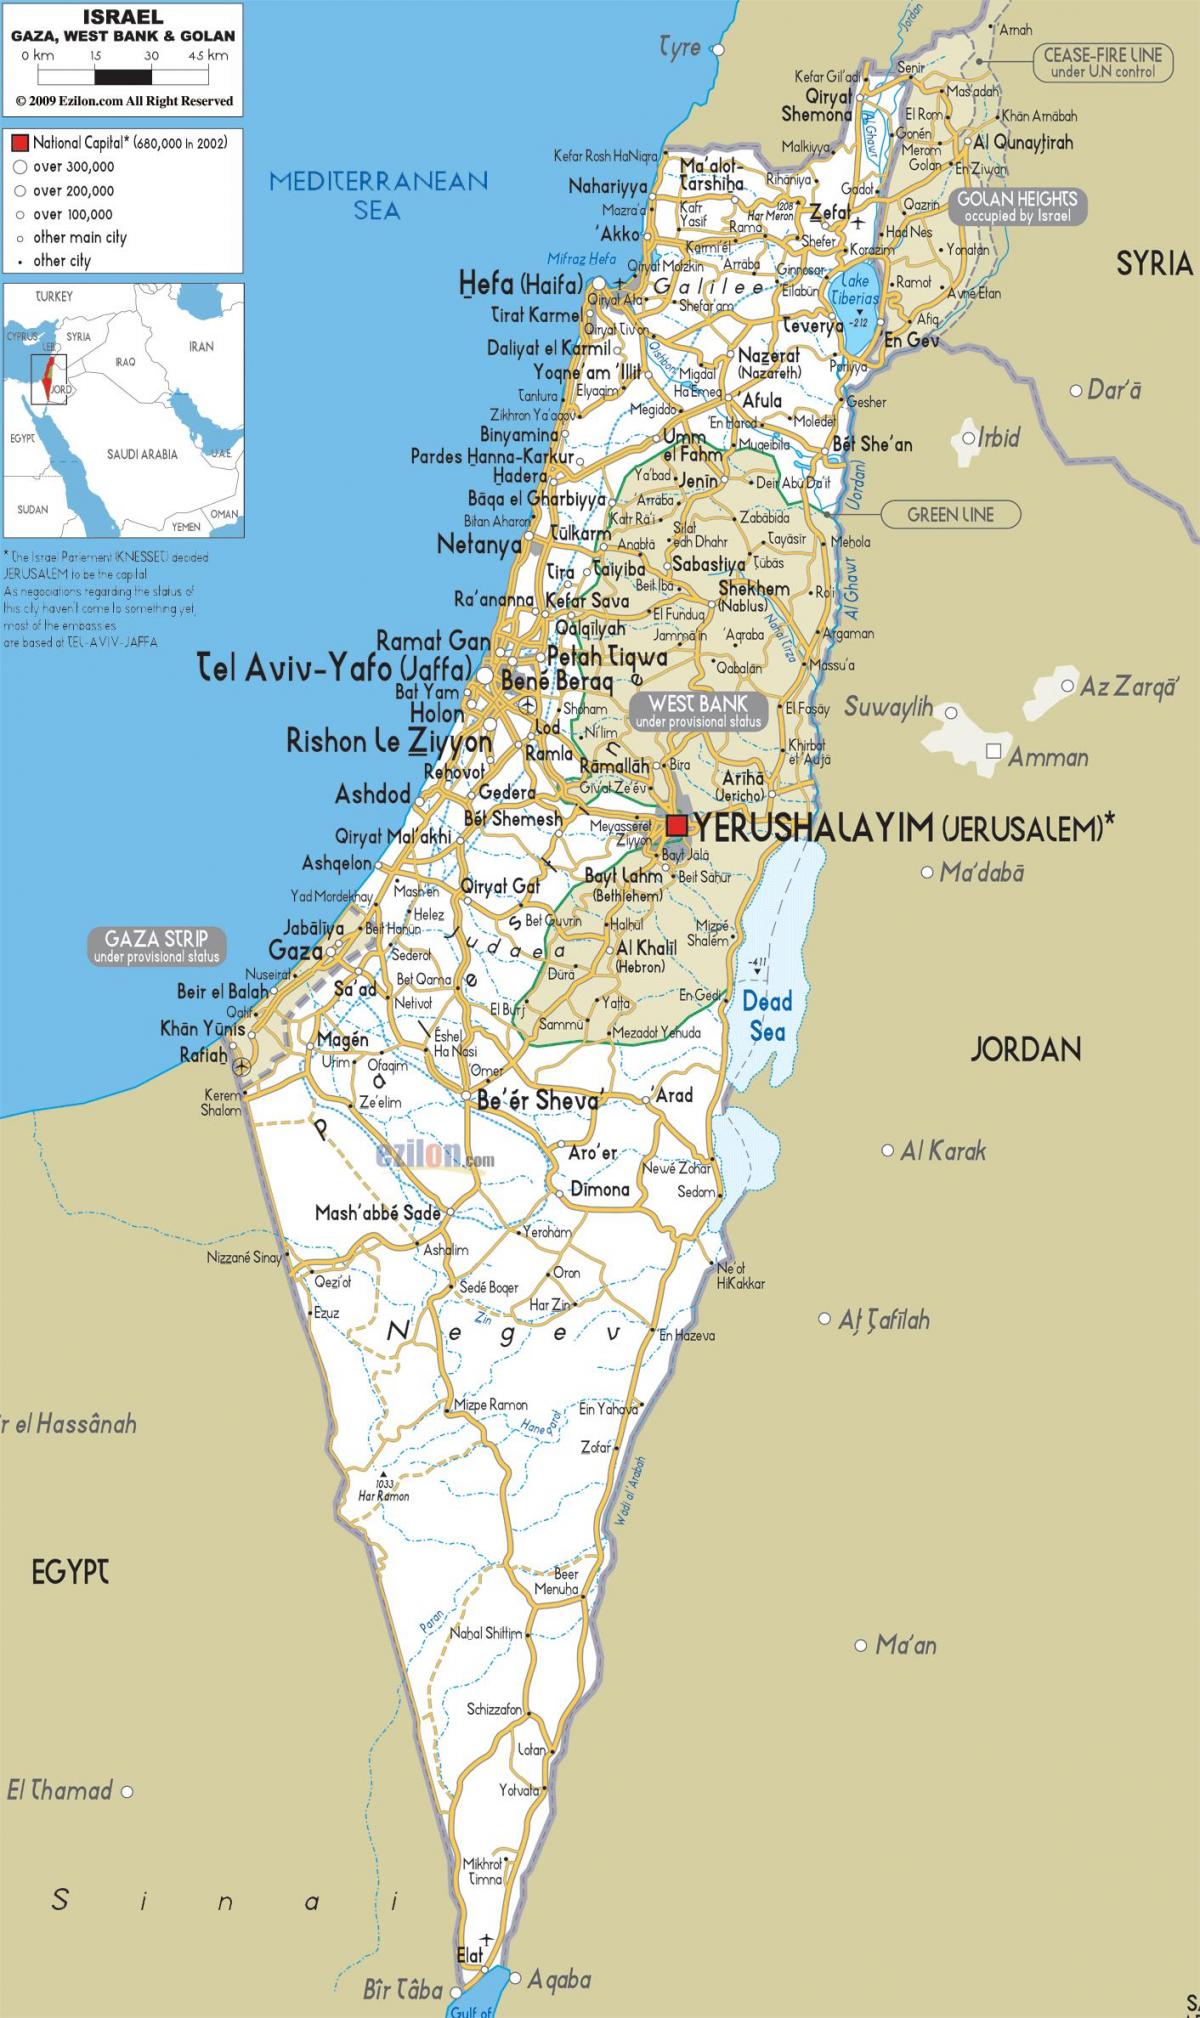 kart over israel veier